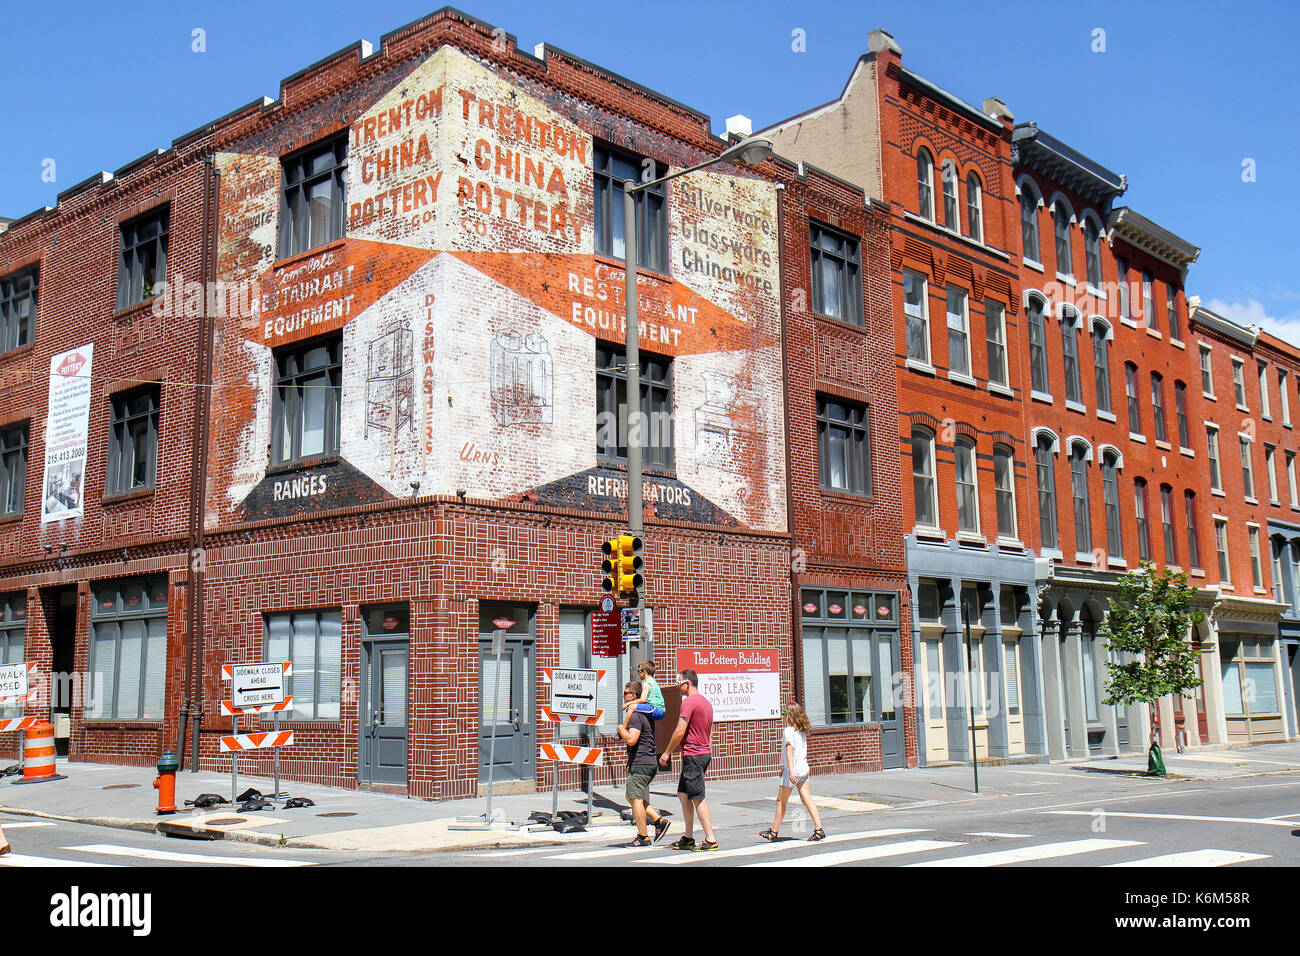 La cerámica de edificio, ciudad vieja, Filadelfia, Pennsylvania, Estados Unidos, América del Norte Foto de stock